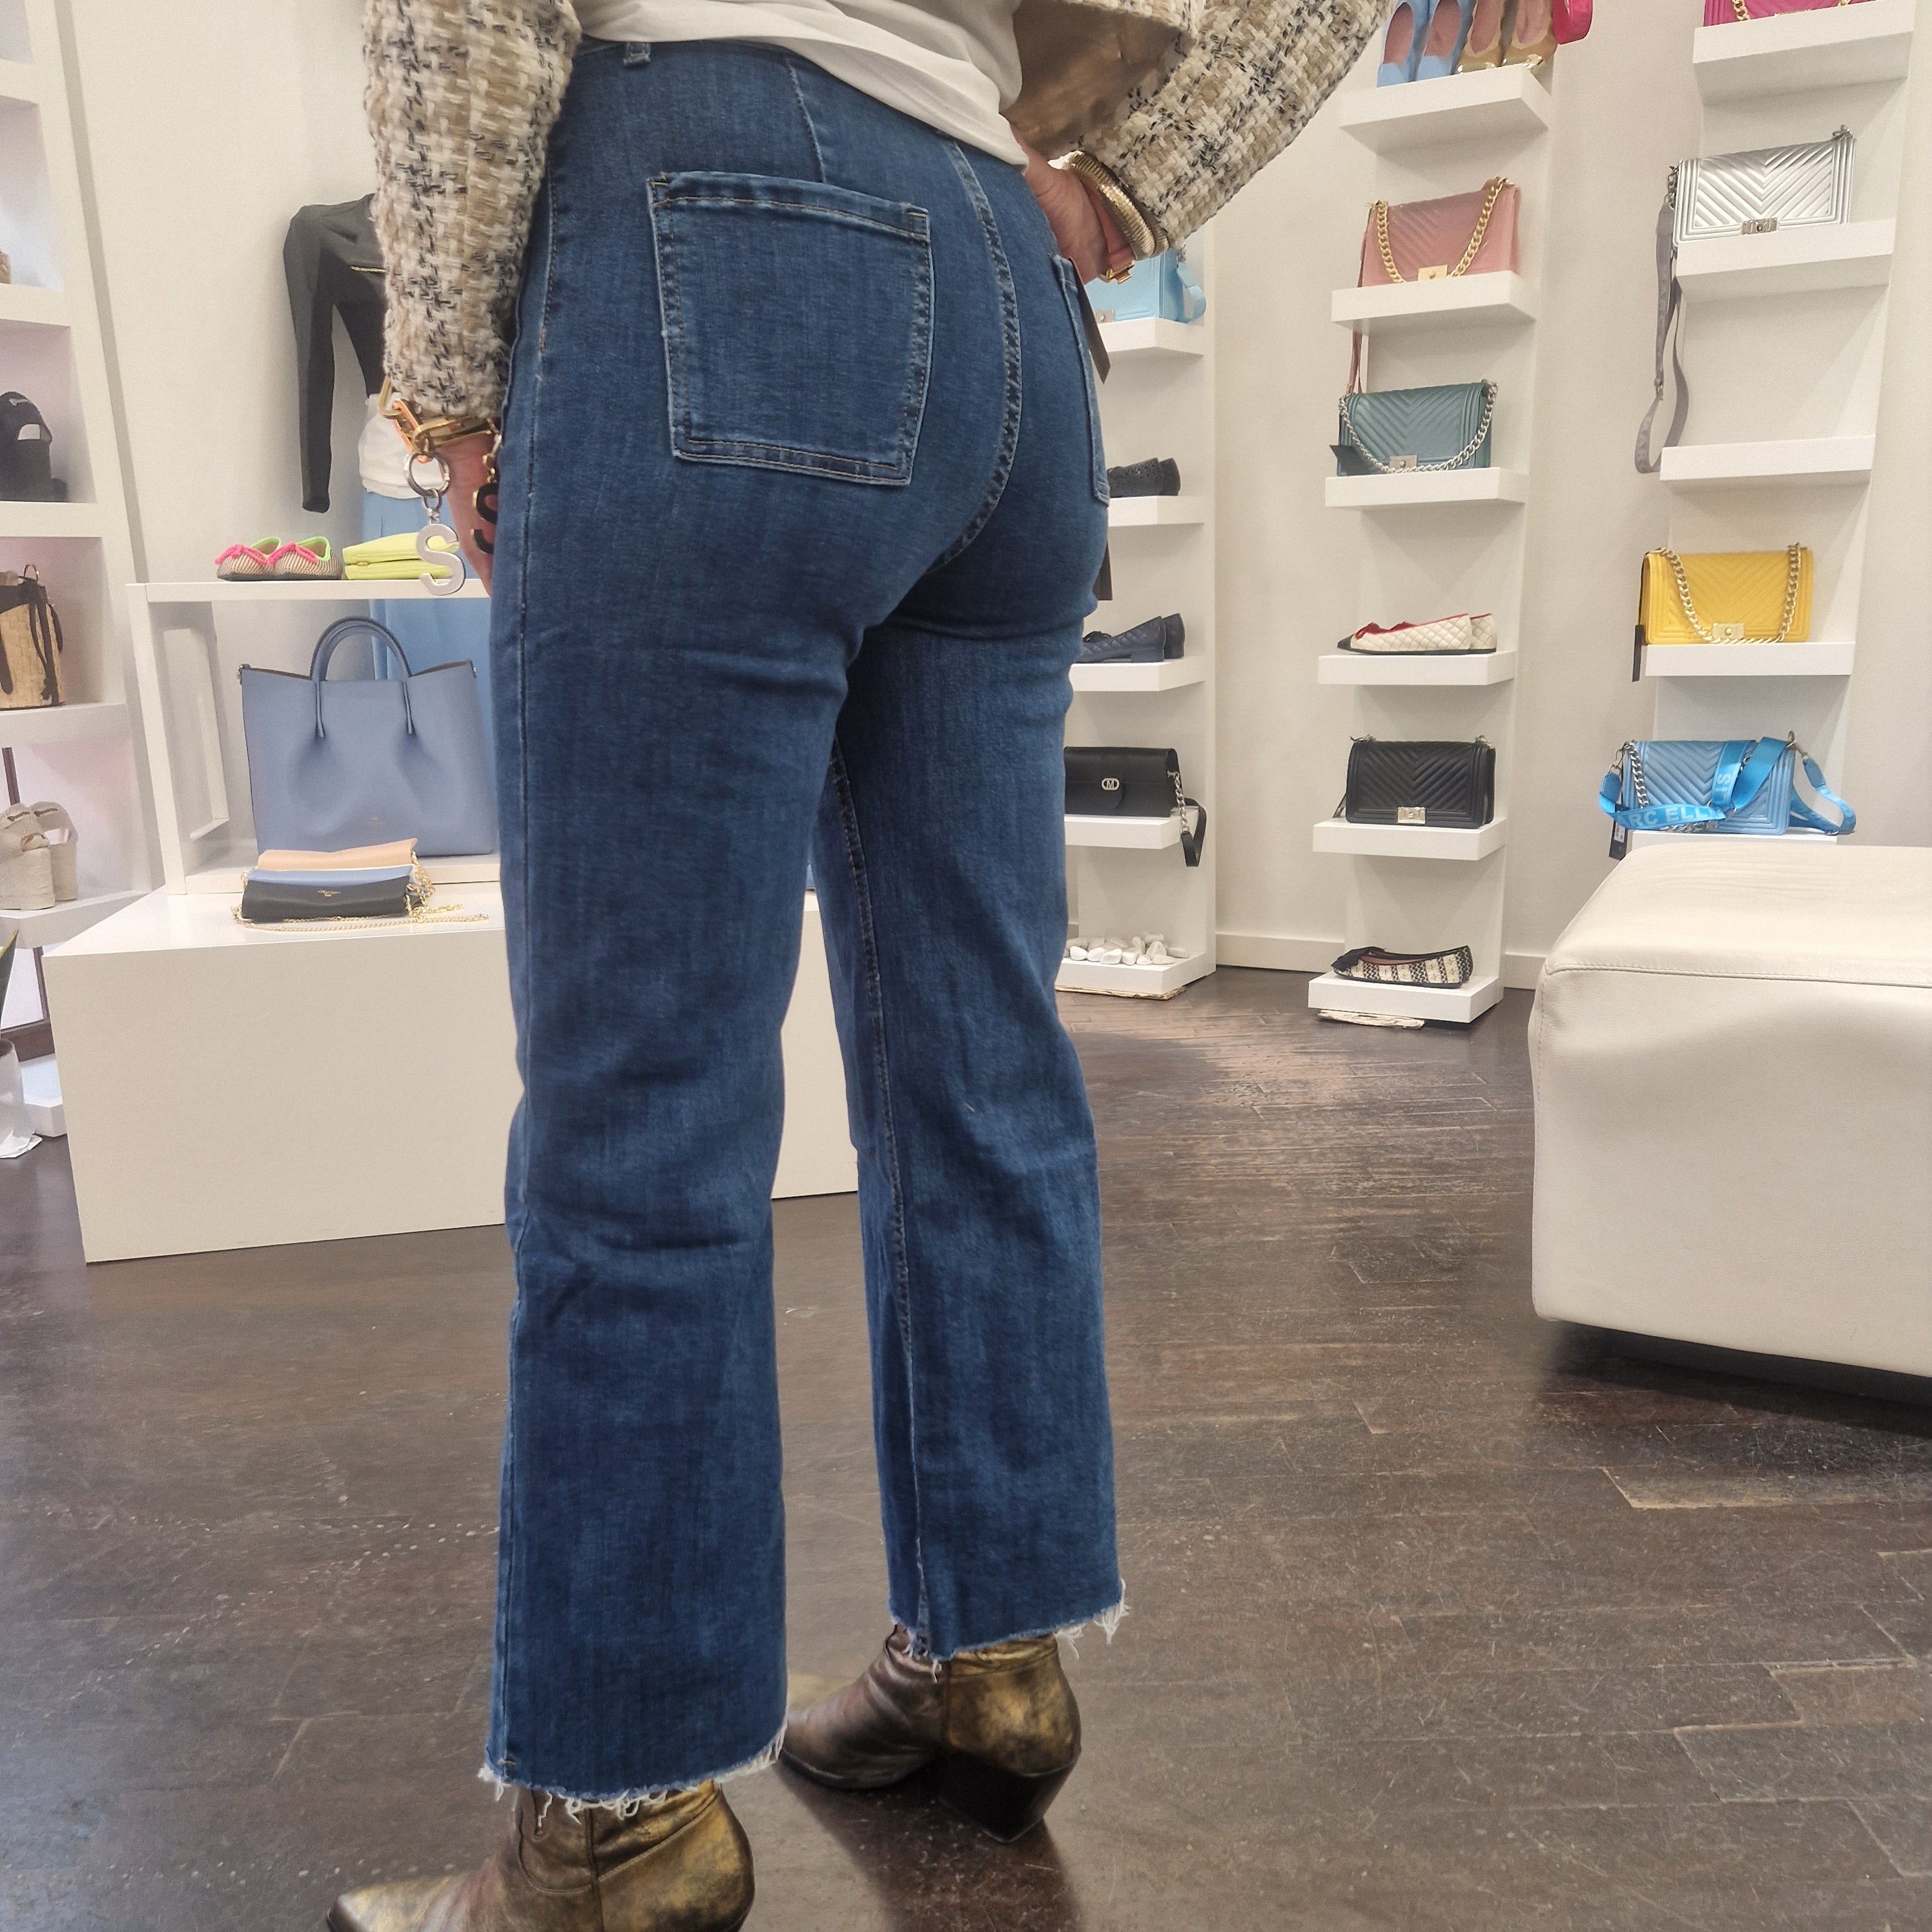 Pantalone jeans con tasche frontali